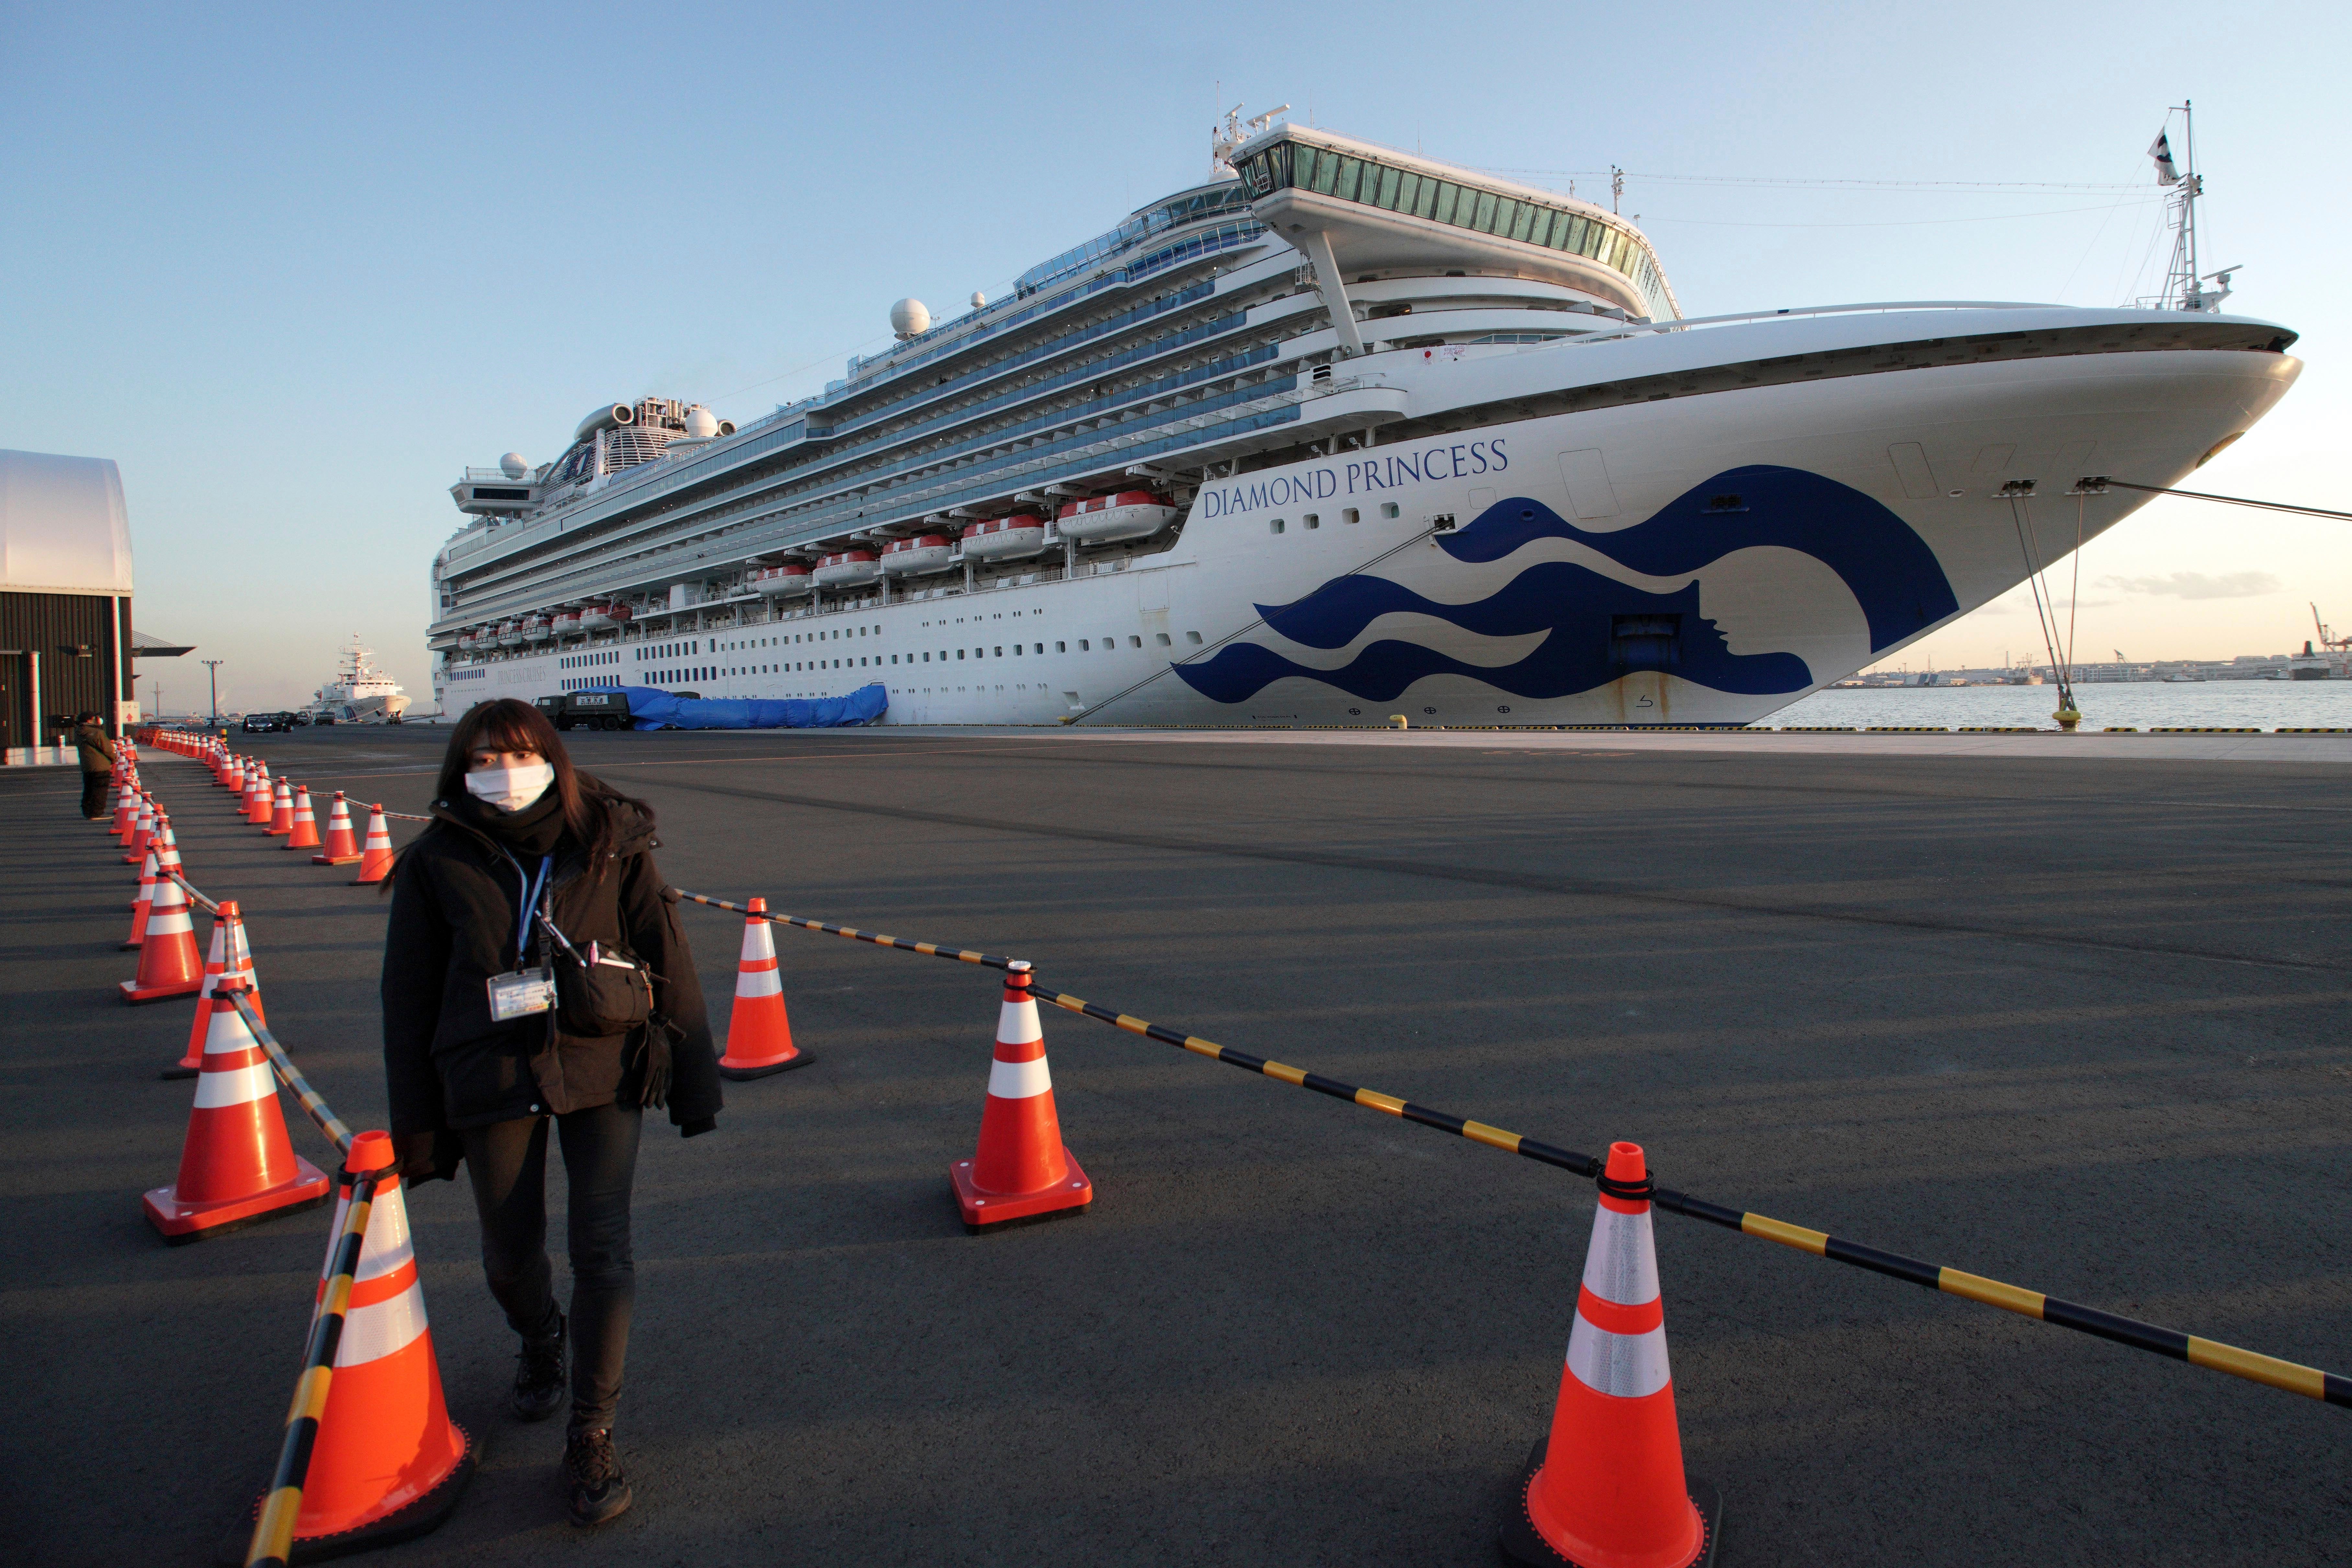 Free porn offered to quarantined coronavirus cruise passengers | Fox  Business